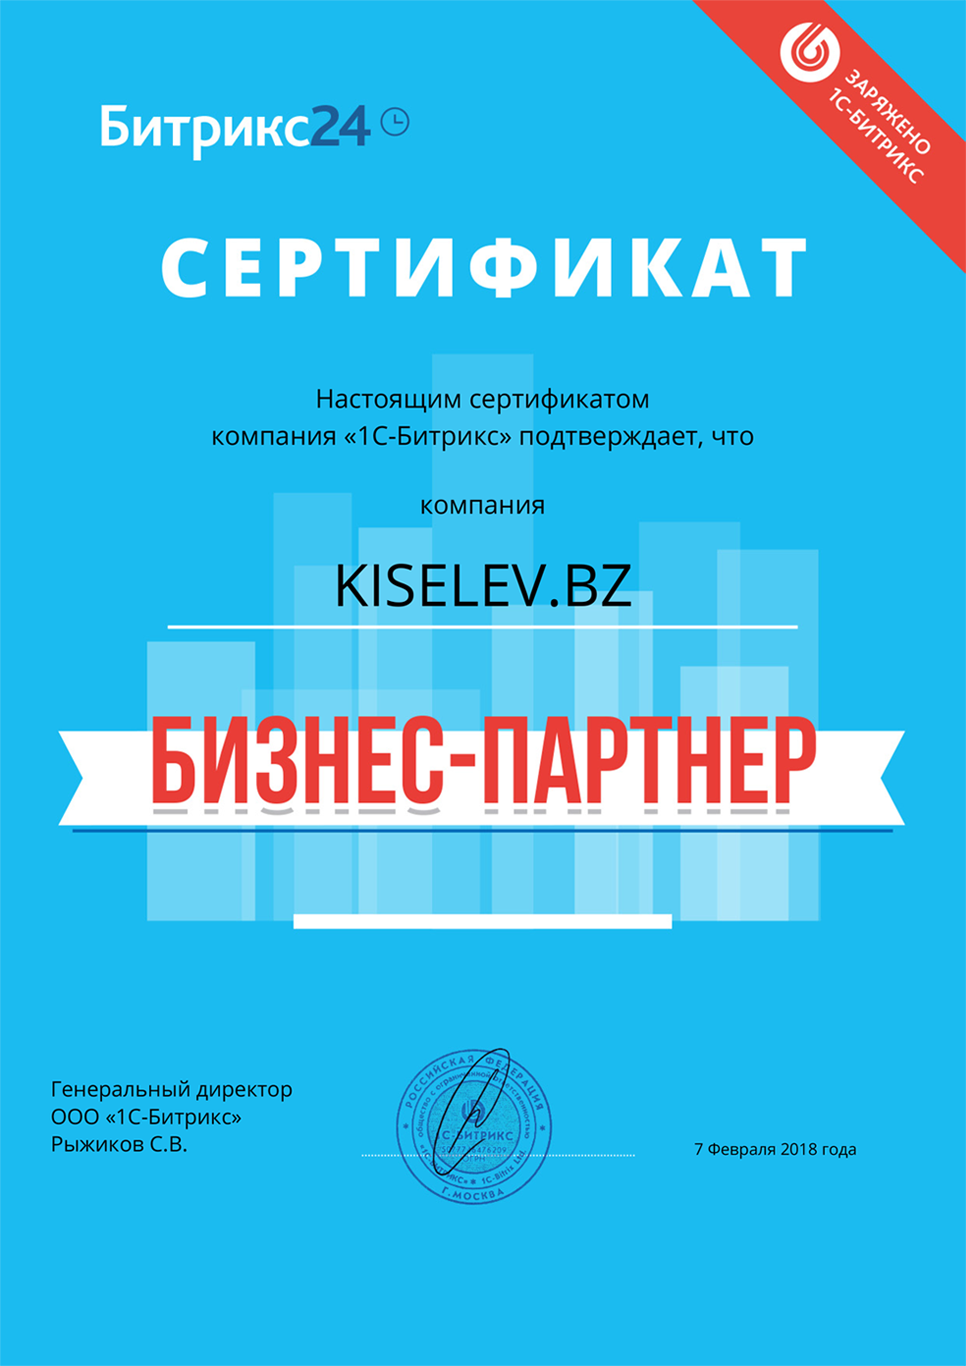 Сертификат партнёра по АМОСРМ в Советске